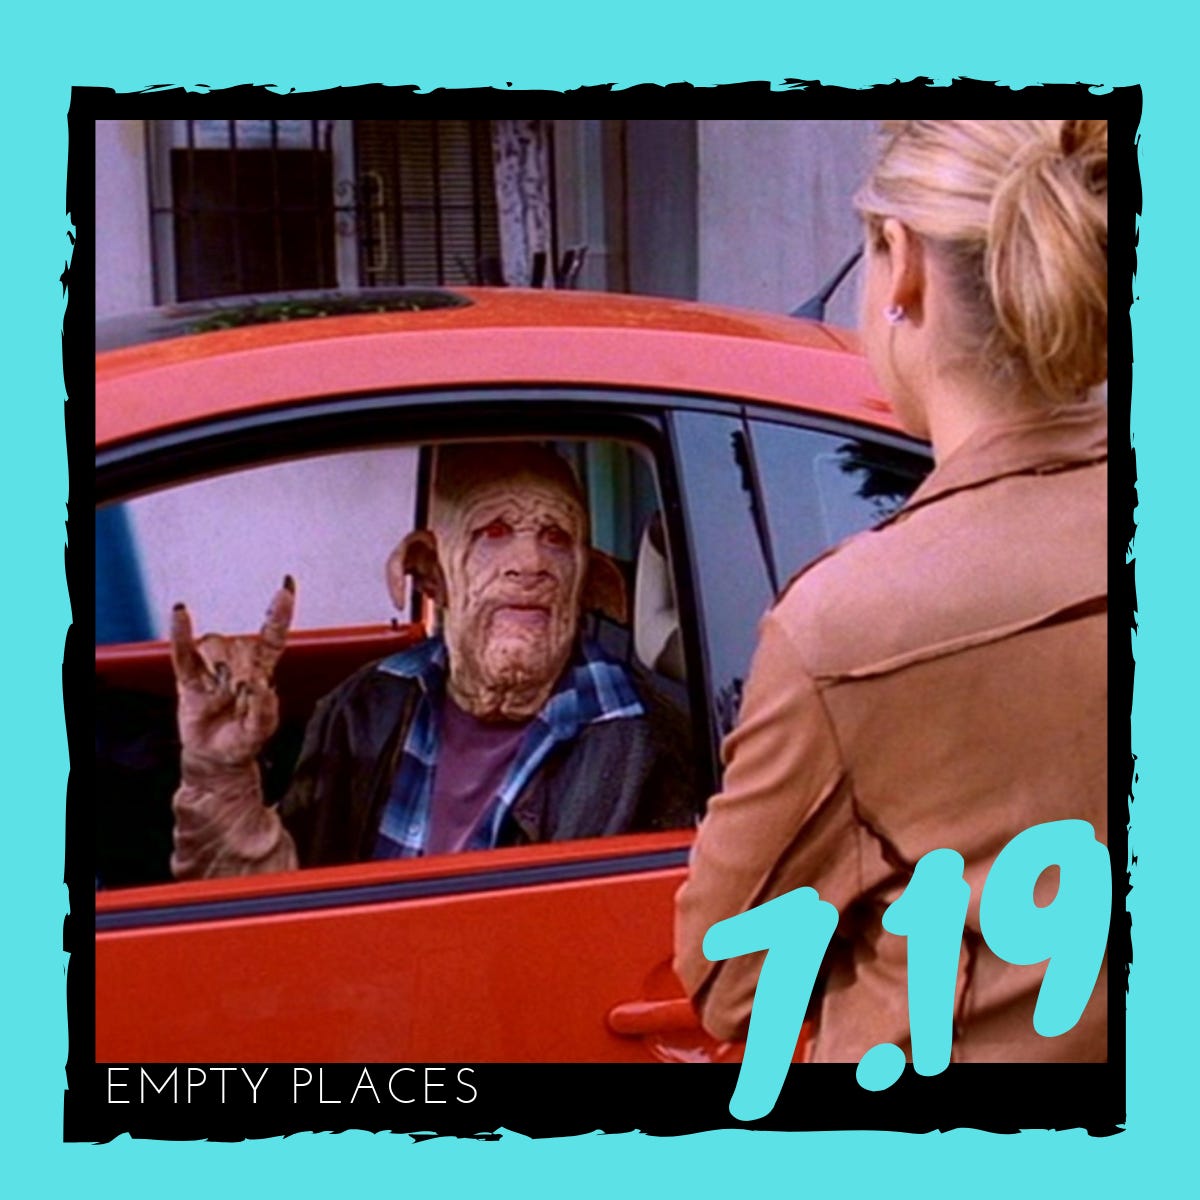 7.19 – "Empty Places"